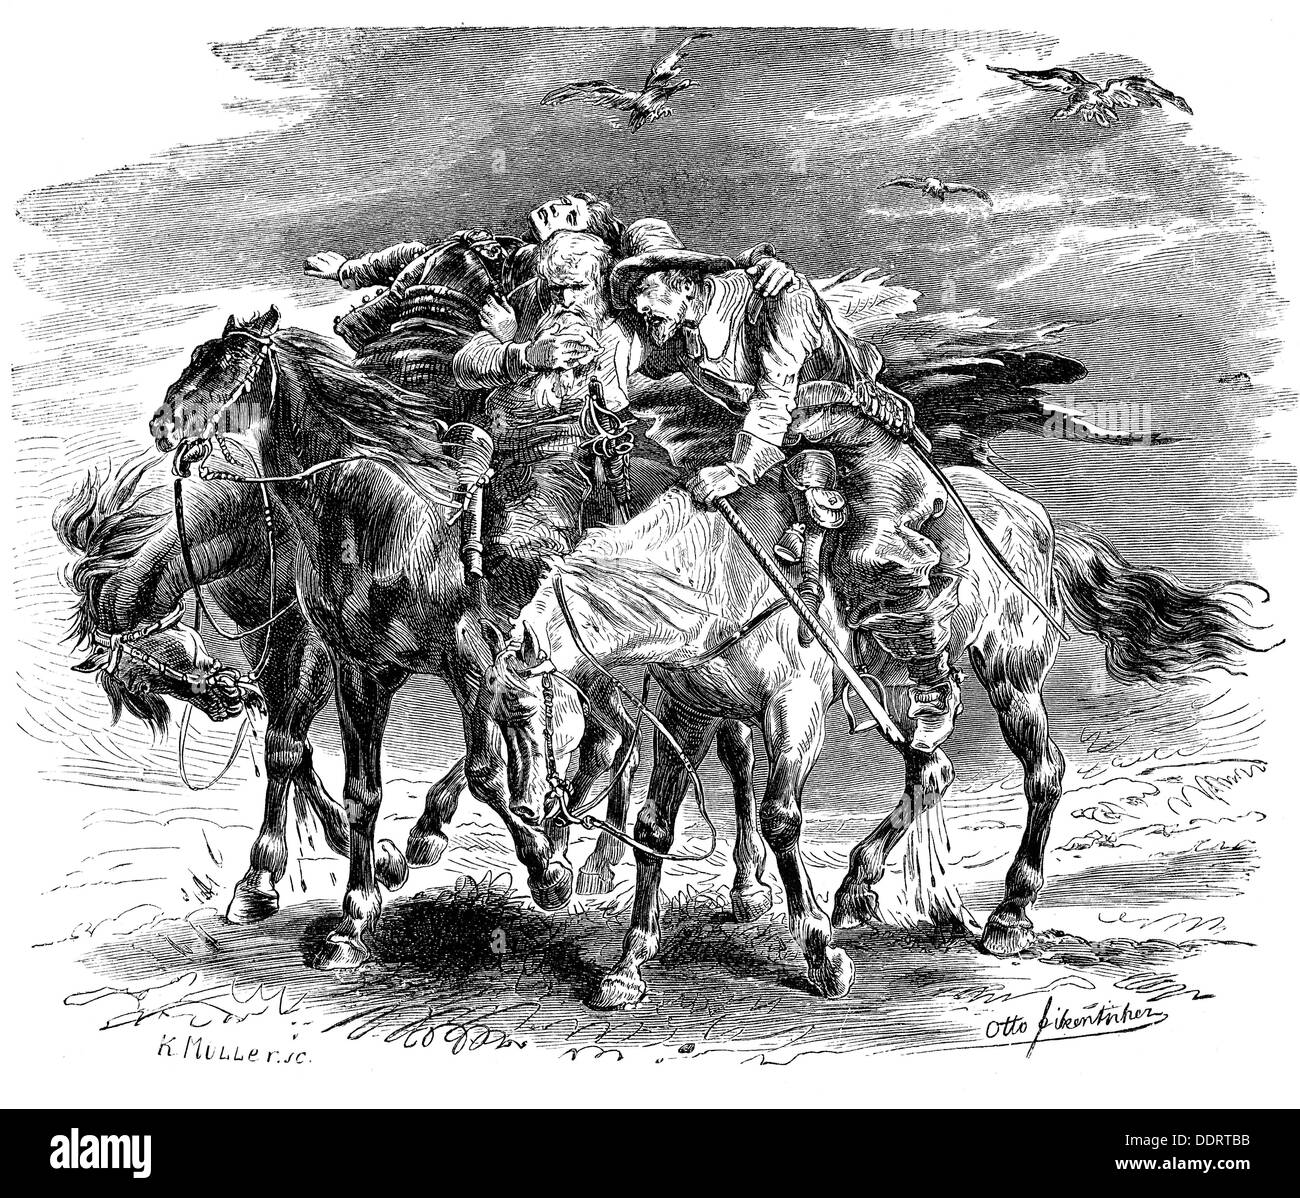 Geibel, Emanuel, 17.10.1815 - 6.4.1884, auteur / écrivain allemand, oevre, 'Diredi Reiter' (Les Trois cavaliers), après dessin par Otto Fikentscher (1862 - 1945), gravure en bois par K.Müller, fin du XIXe siècle, Banque D'Images